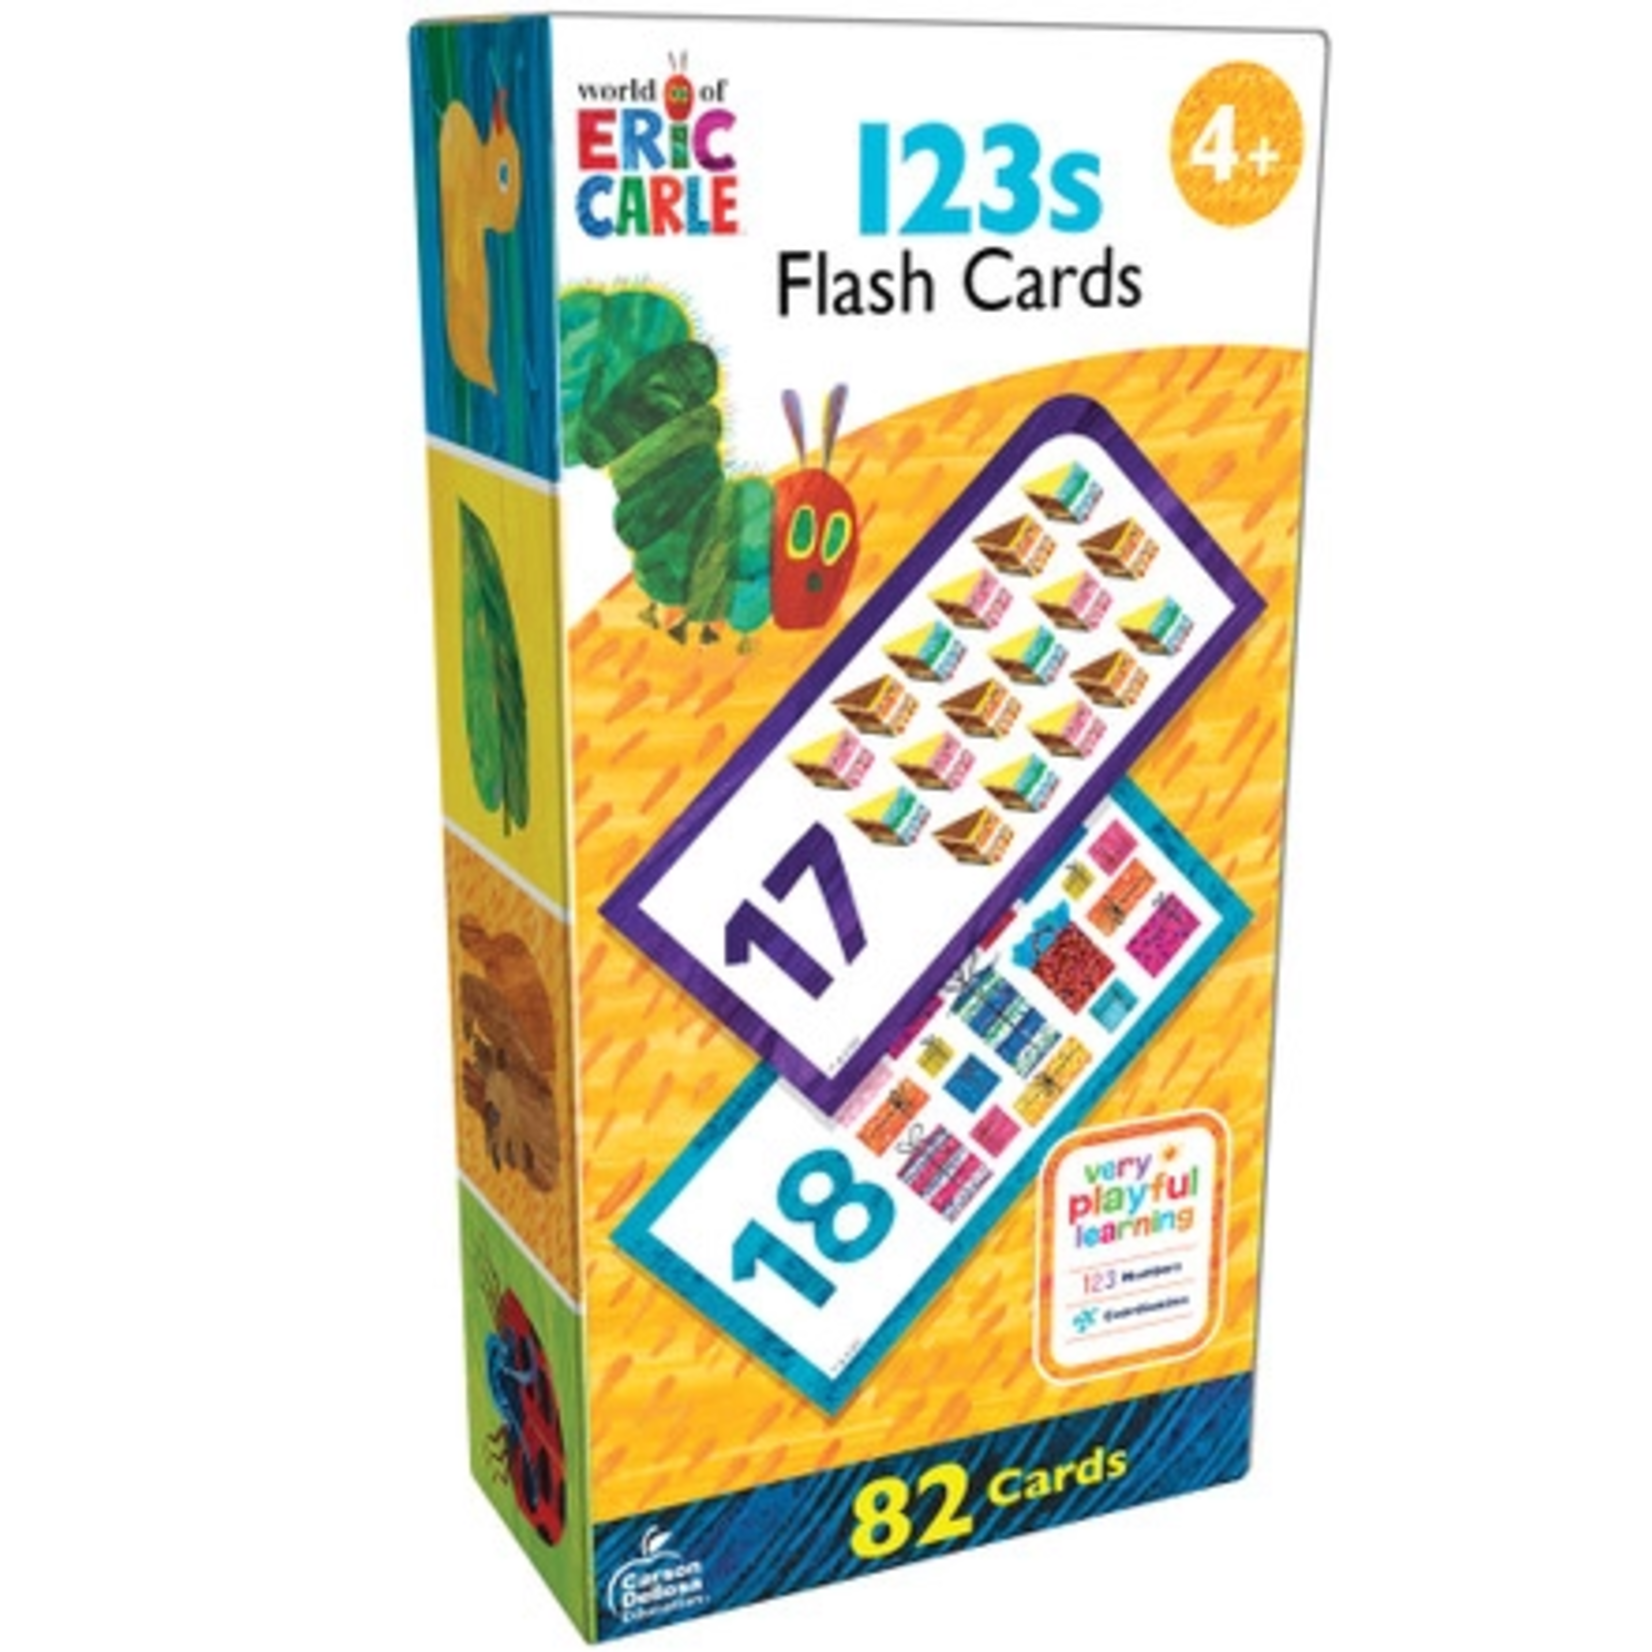 CARSON DELLOSA PUBLISHING CO World of Eric Carle™ 123s Flash Cards Grade PK-1